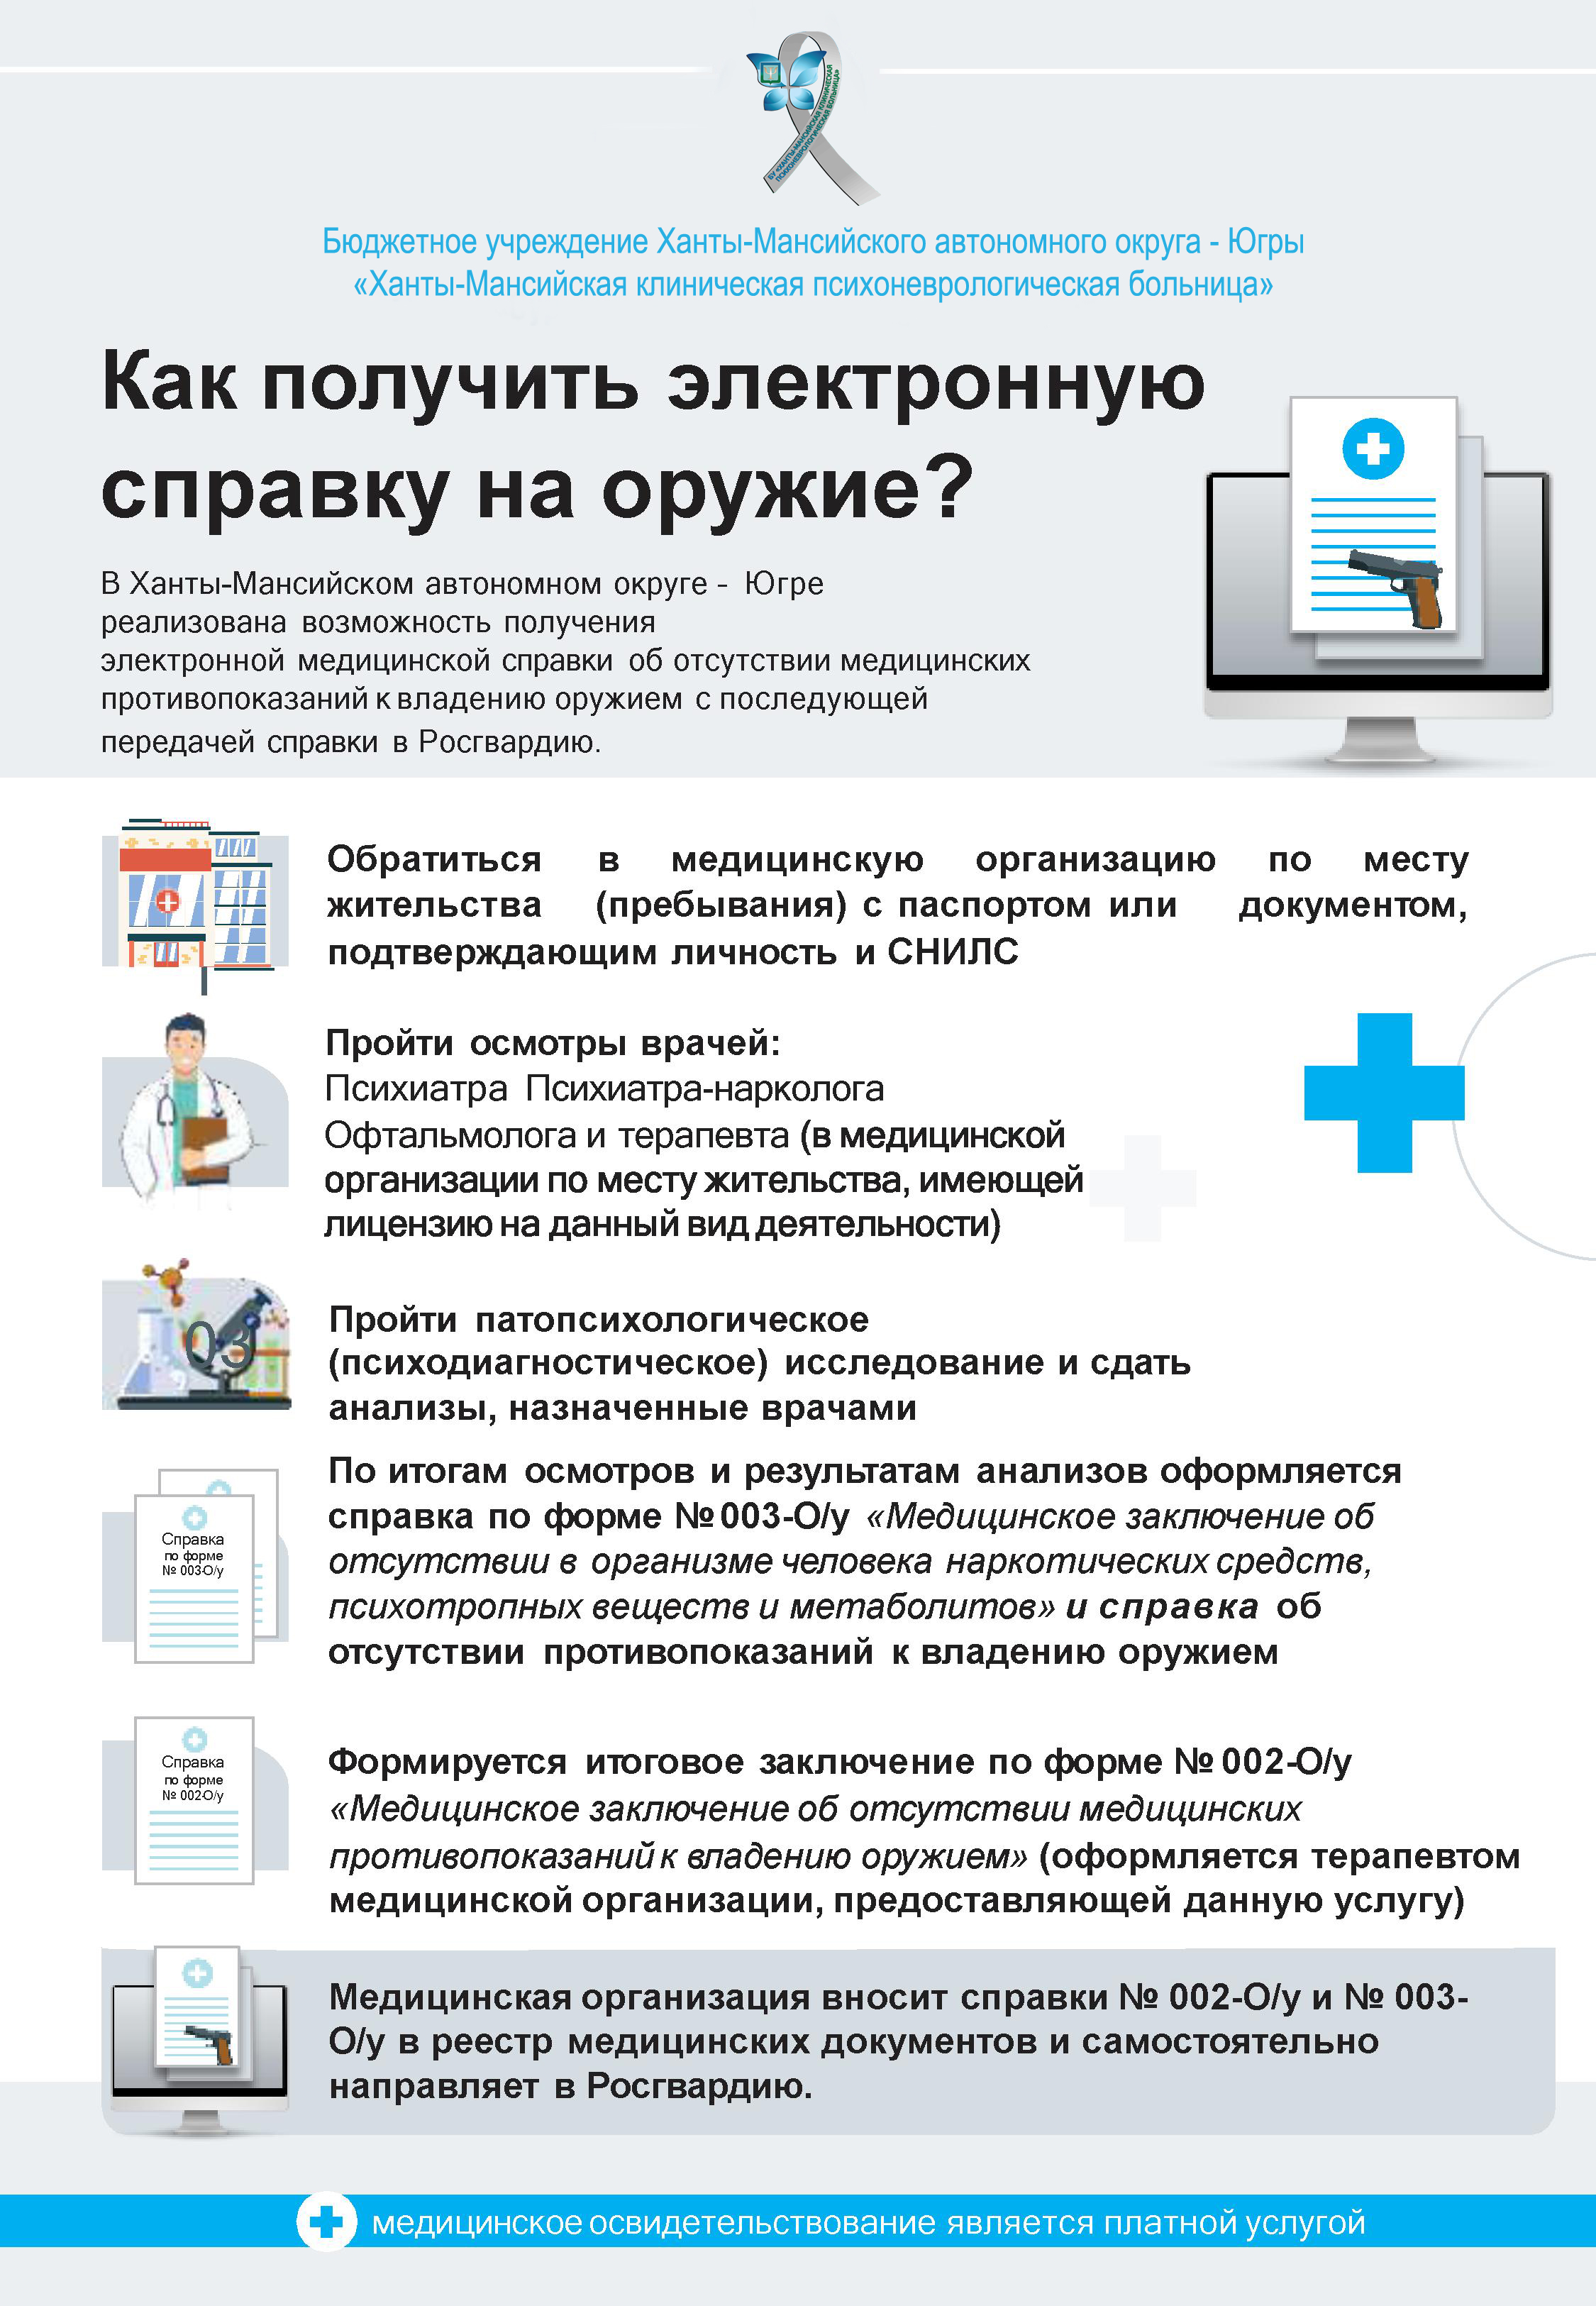 Телефон платной регистратуры 13 больницы нижний новгород